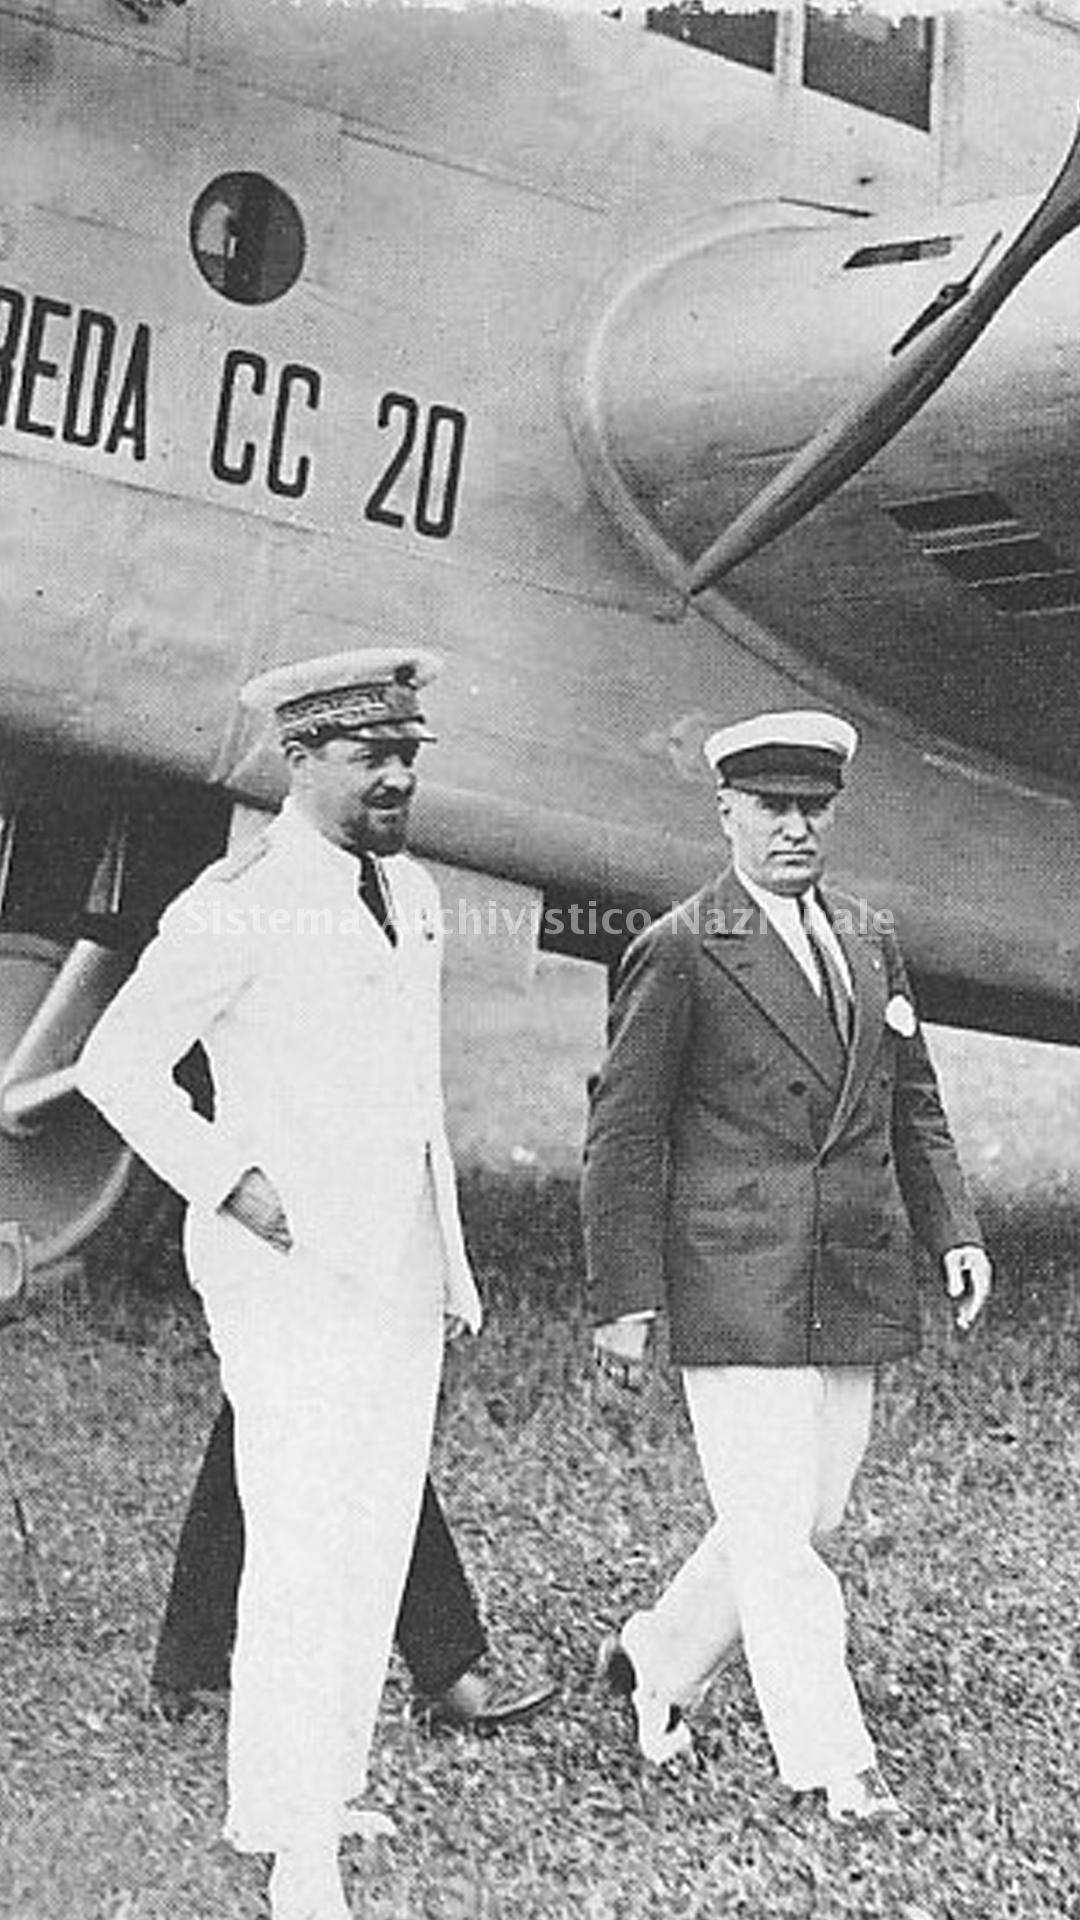   Italo Balbo e Benito Mussolini alla presentazione dell\'aereo "Breda CC 20", 1929 ca. (Fondazione Isec, fondo Breda).
